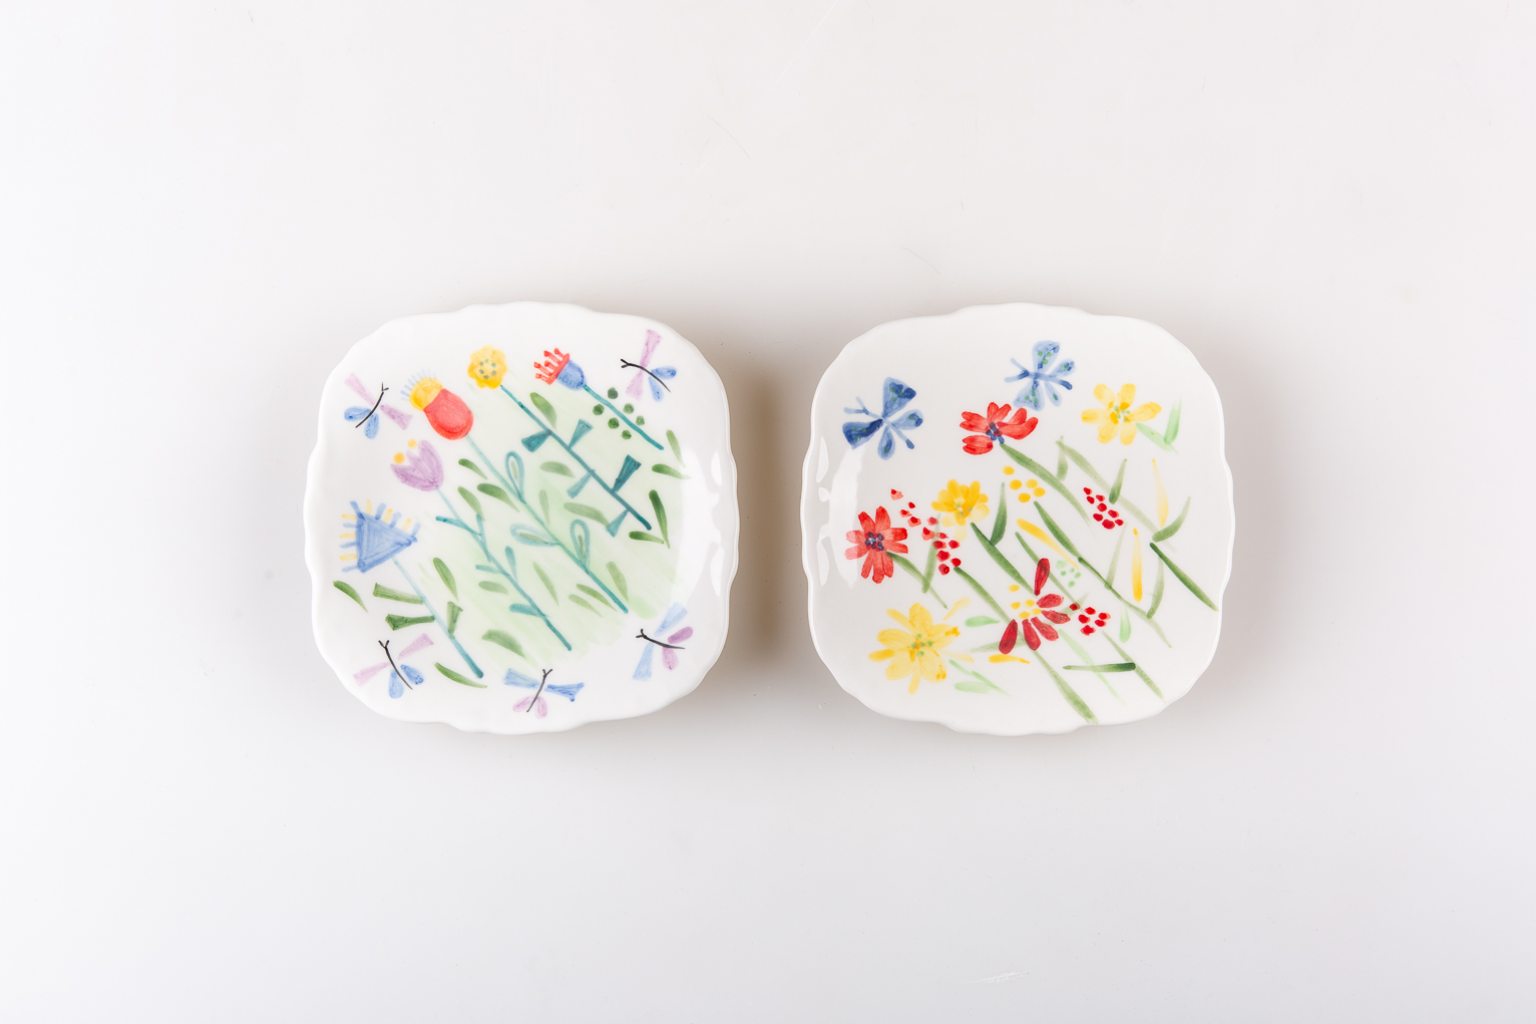 Τwo hand-painted plates